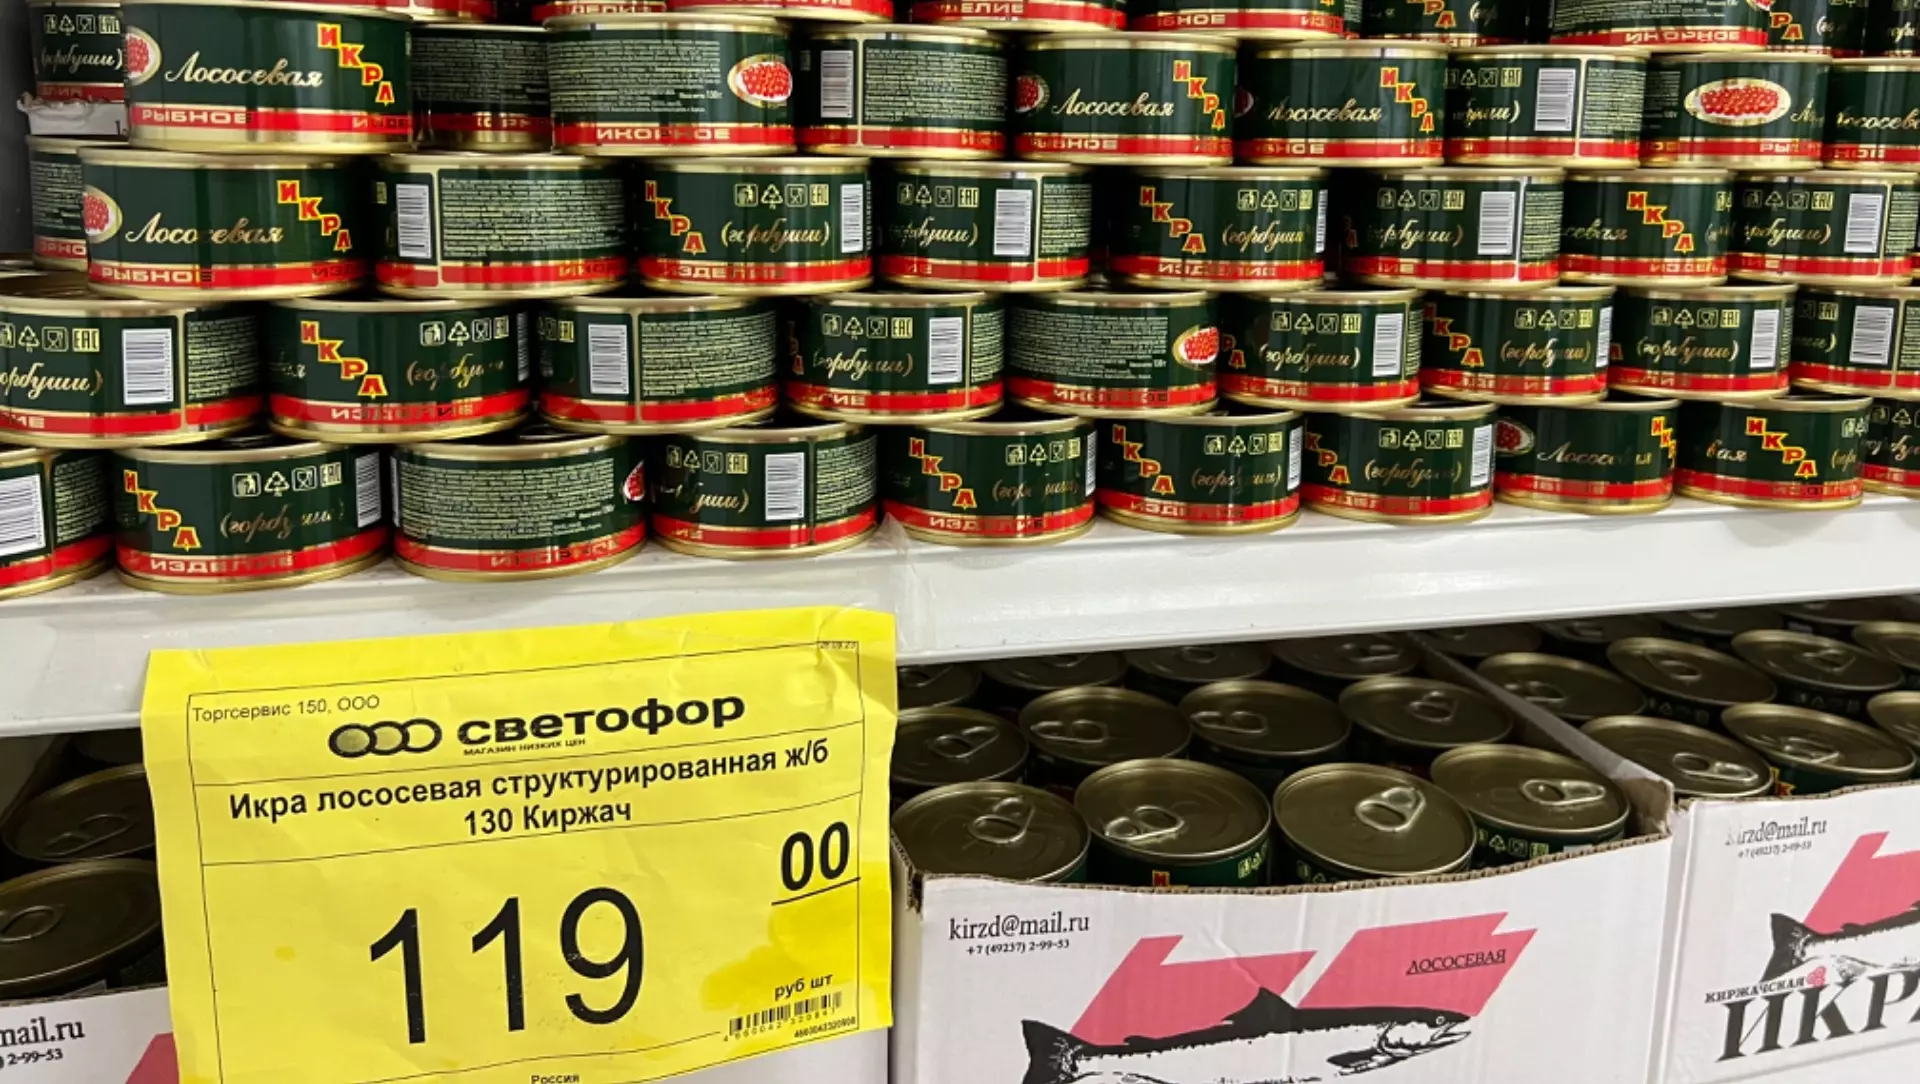 Еда, да не та: ТОП-13 продуктов в магазинах, которыми унижают нацию